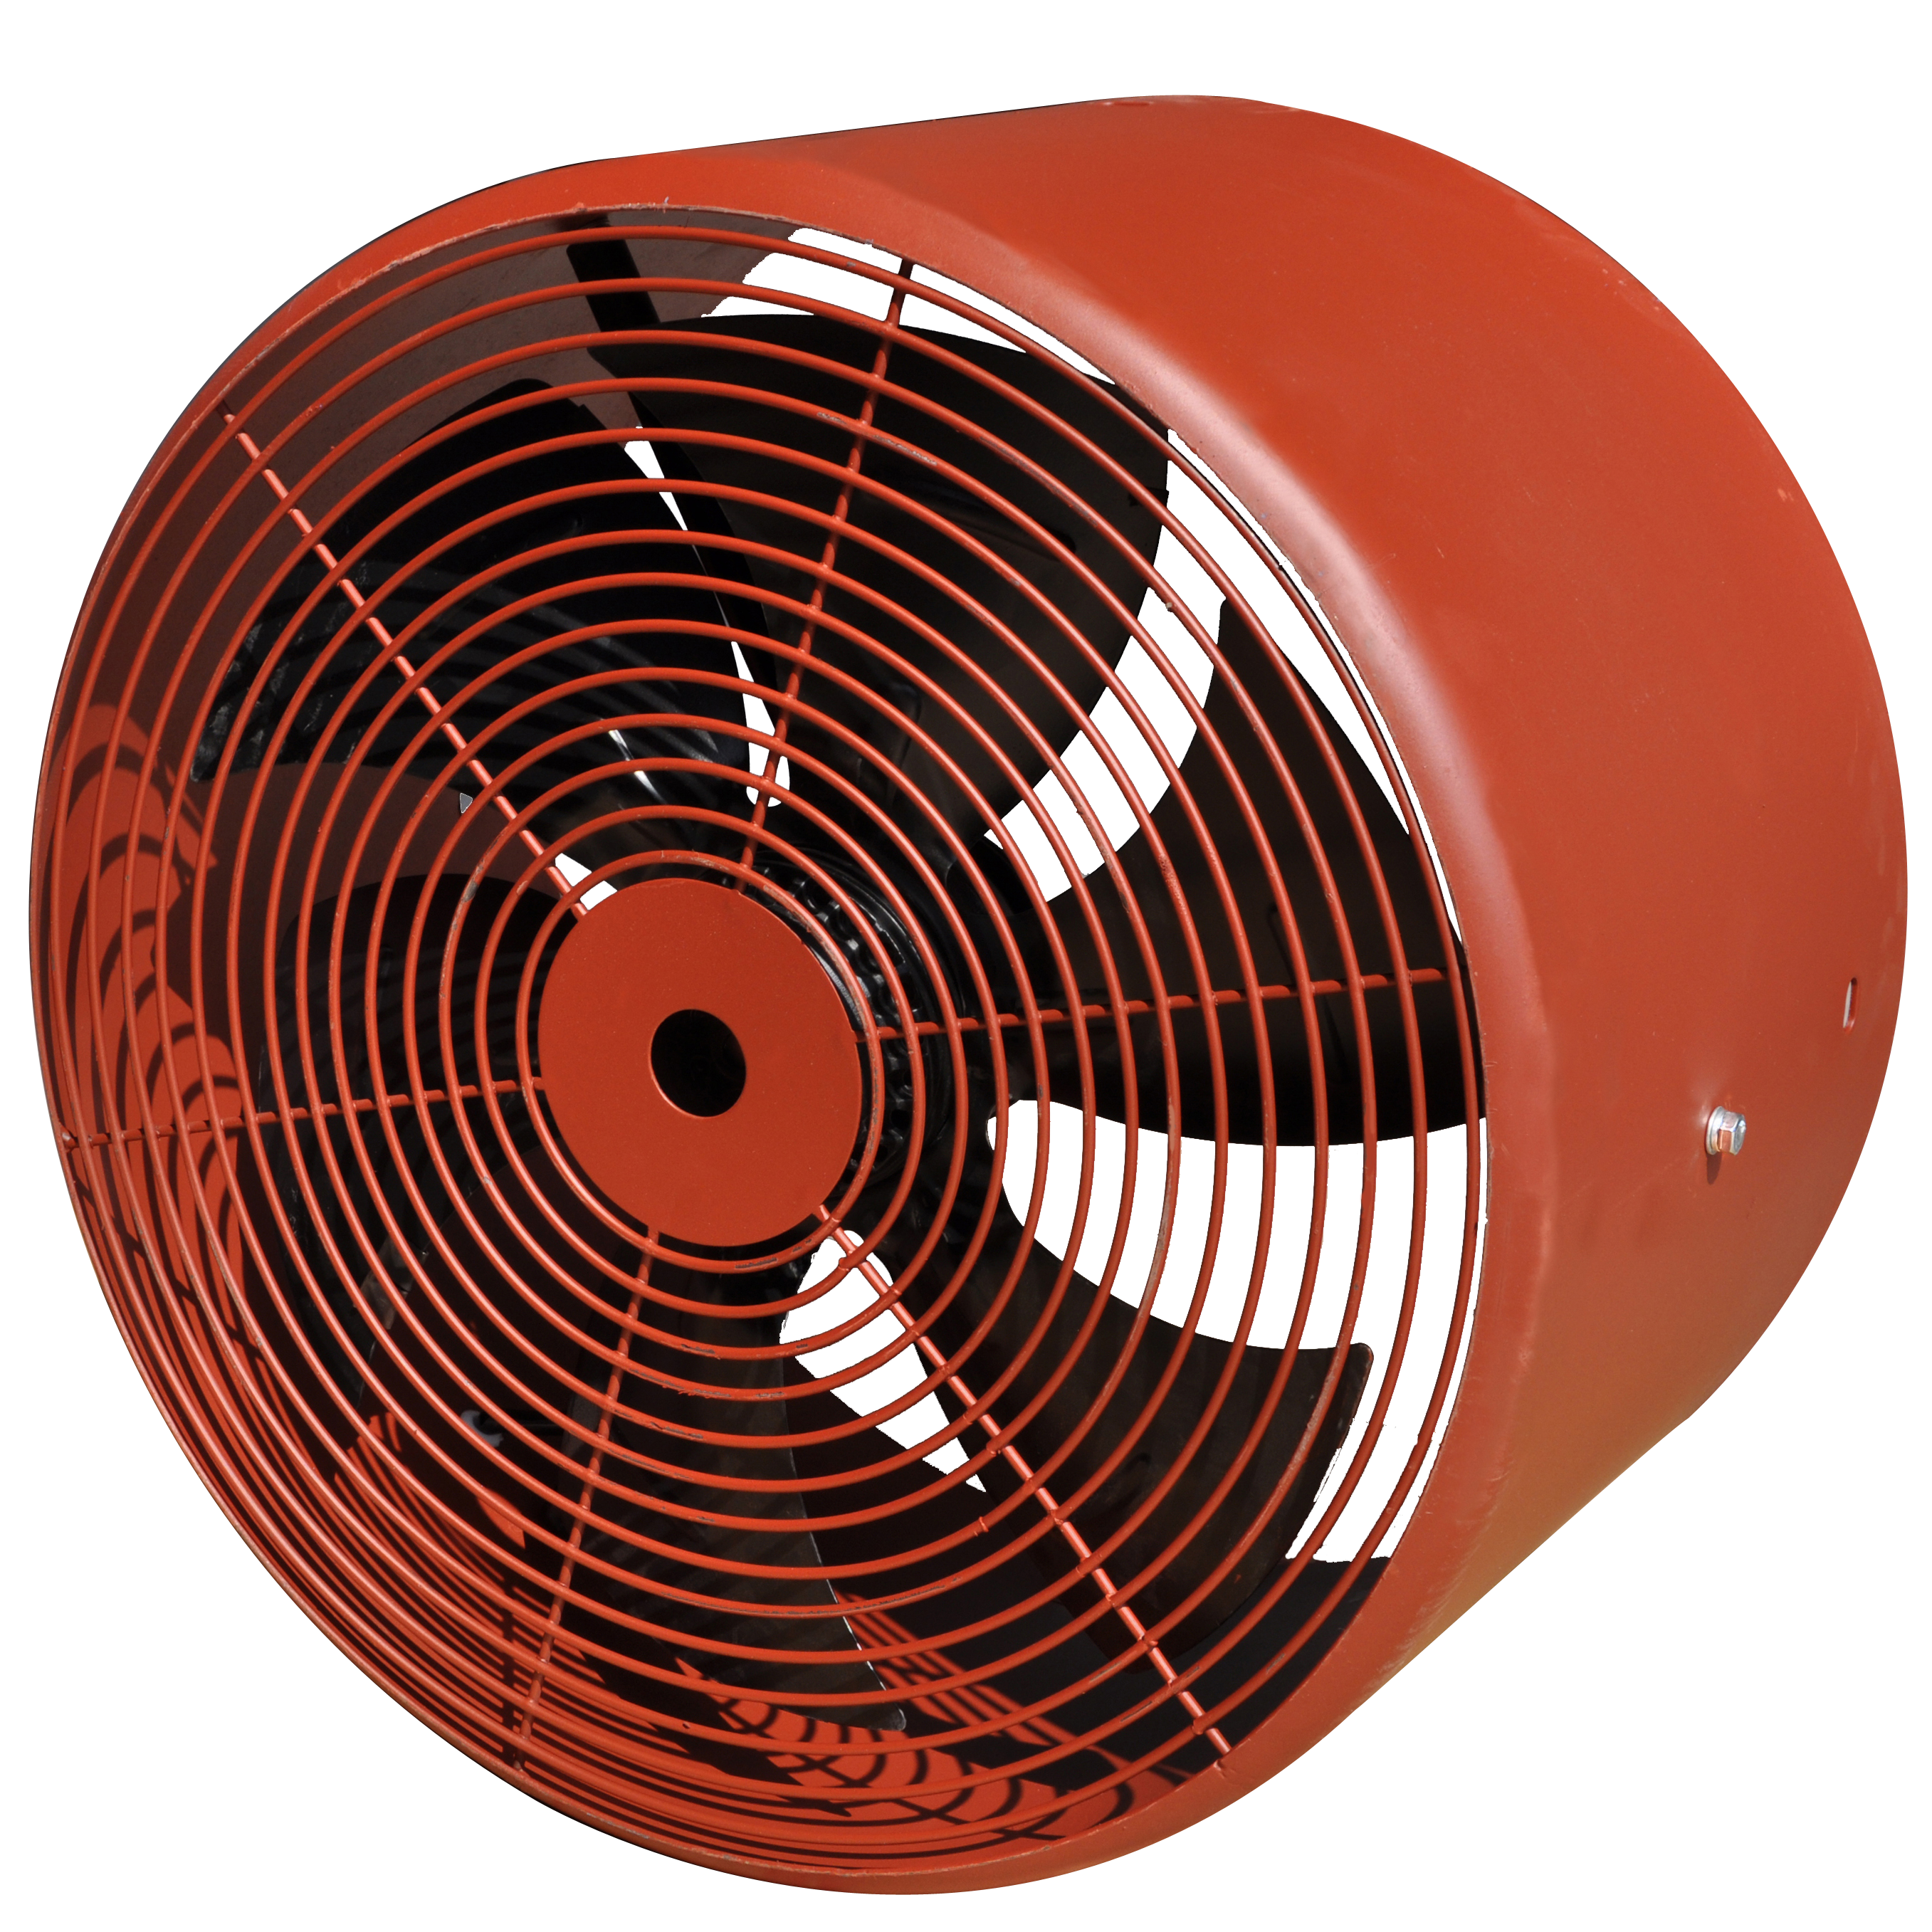 Electric Motor's Cooling Fan